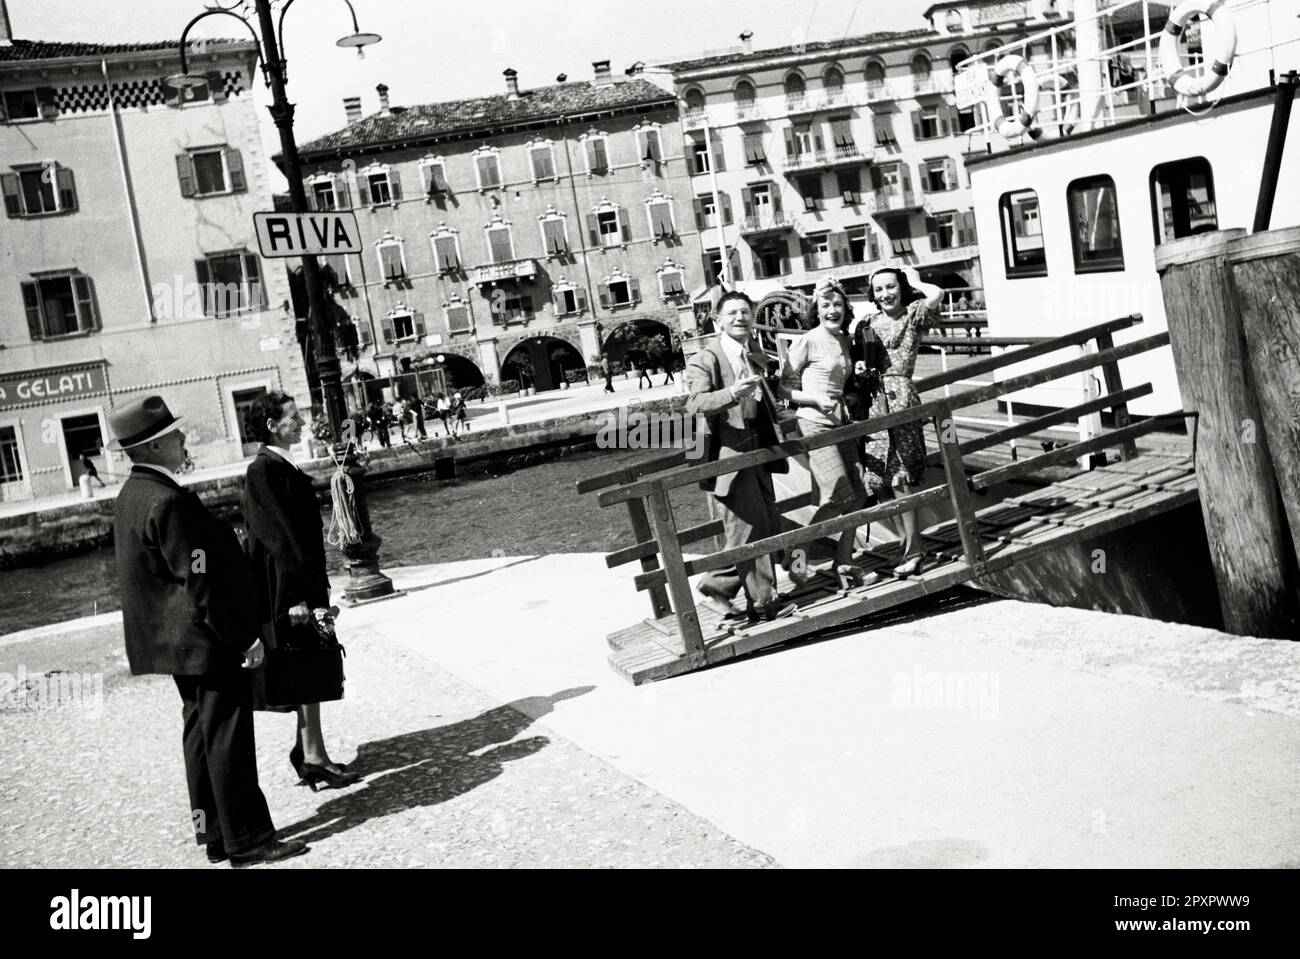 Riva del Garda (già Riva, Ripa in latino, Rìva in dialetto locale) è un comune italiano di 17 722 abitanti della provincia autonoma di Trento che fa parte della Comunità Alto Garda e Ledro.(Wikipedia) Stock Photo